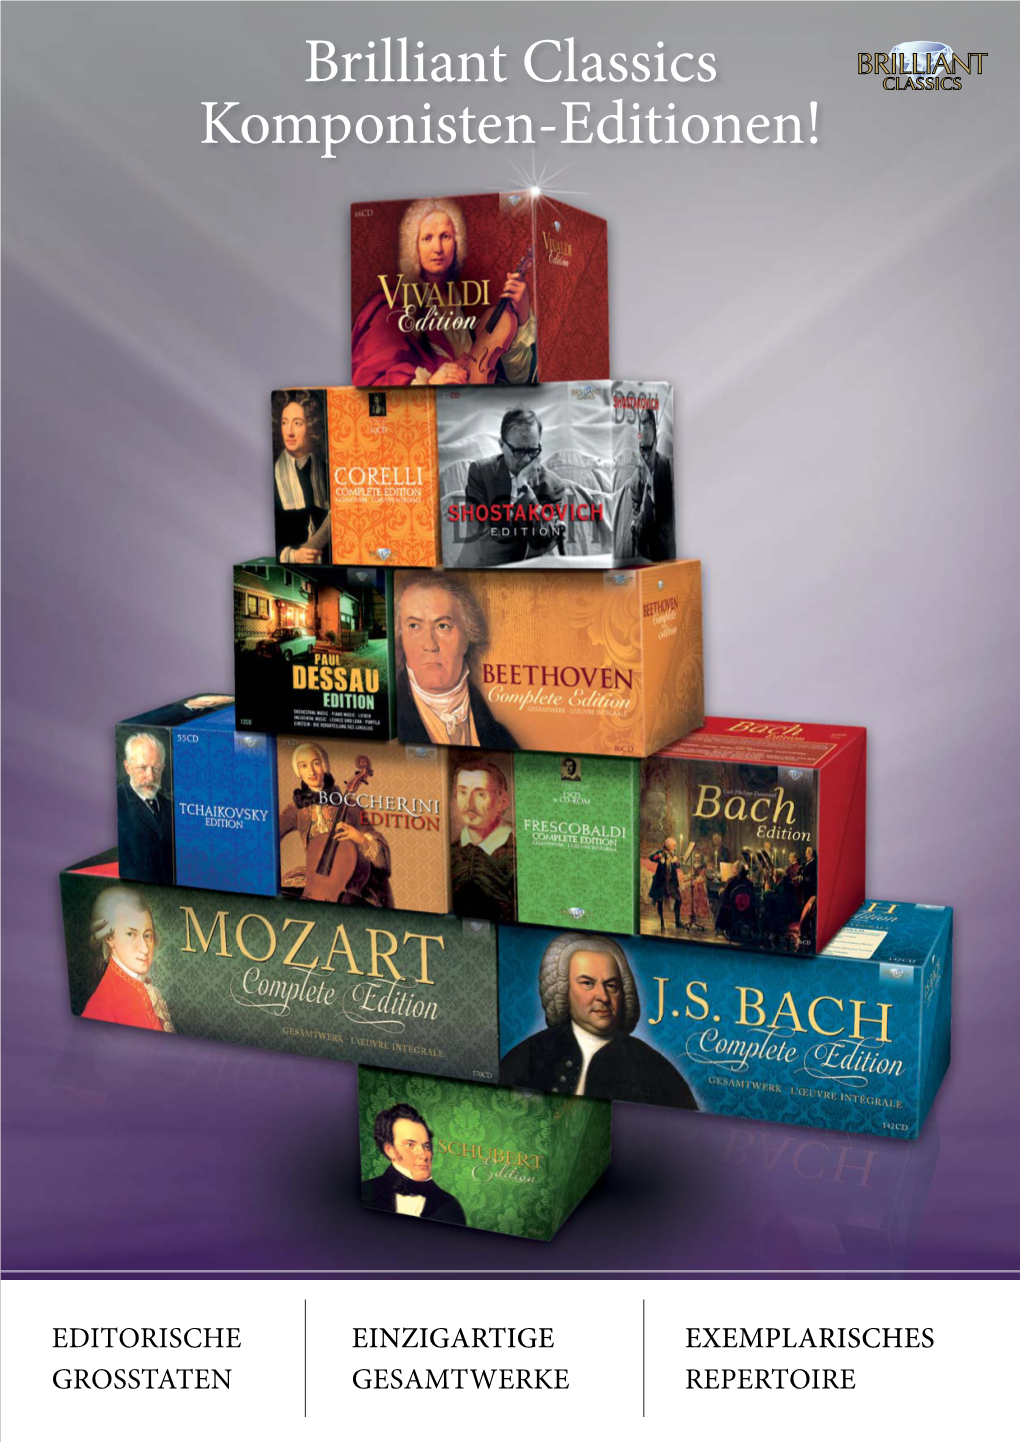 Brilliant Classics Komponisten-Editionen!